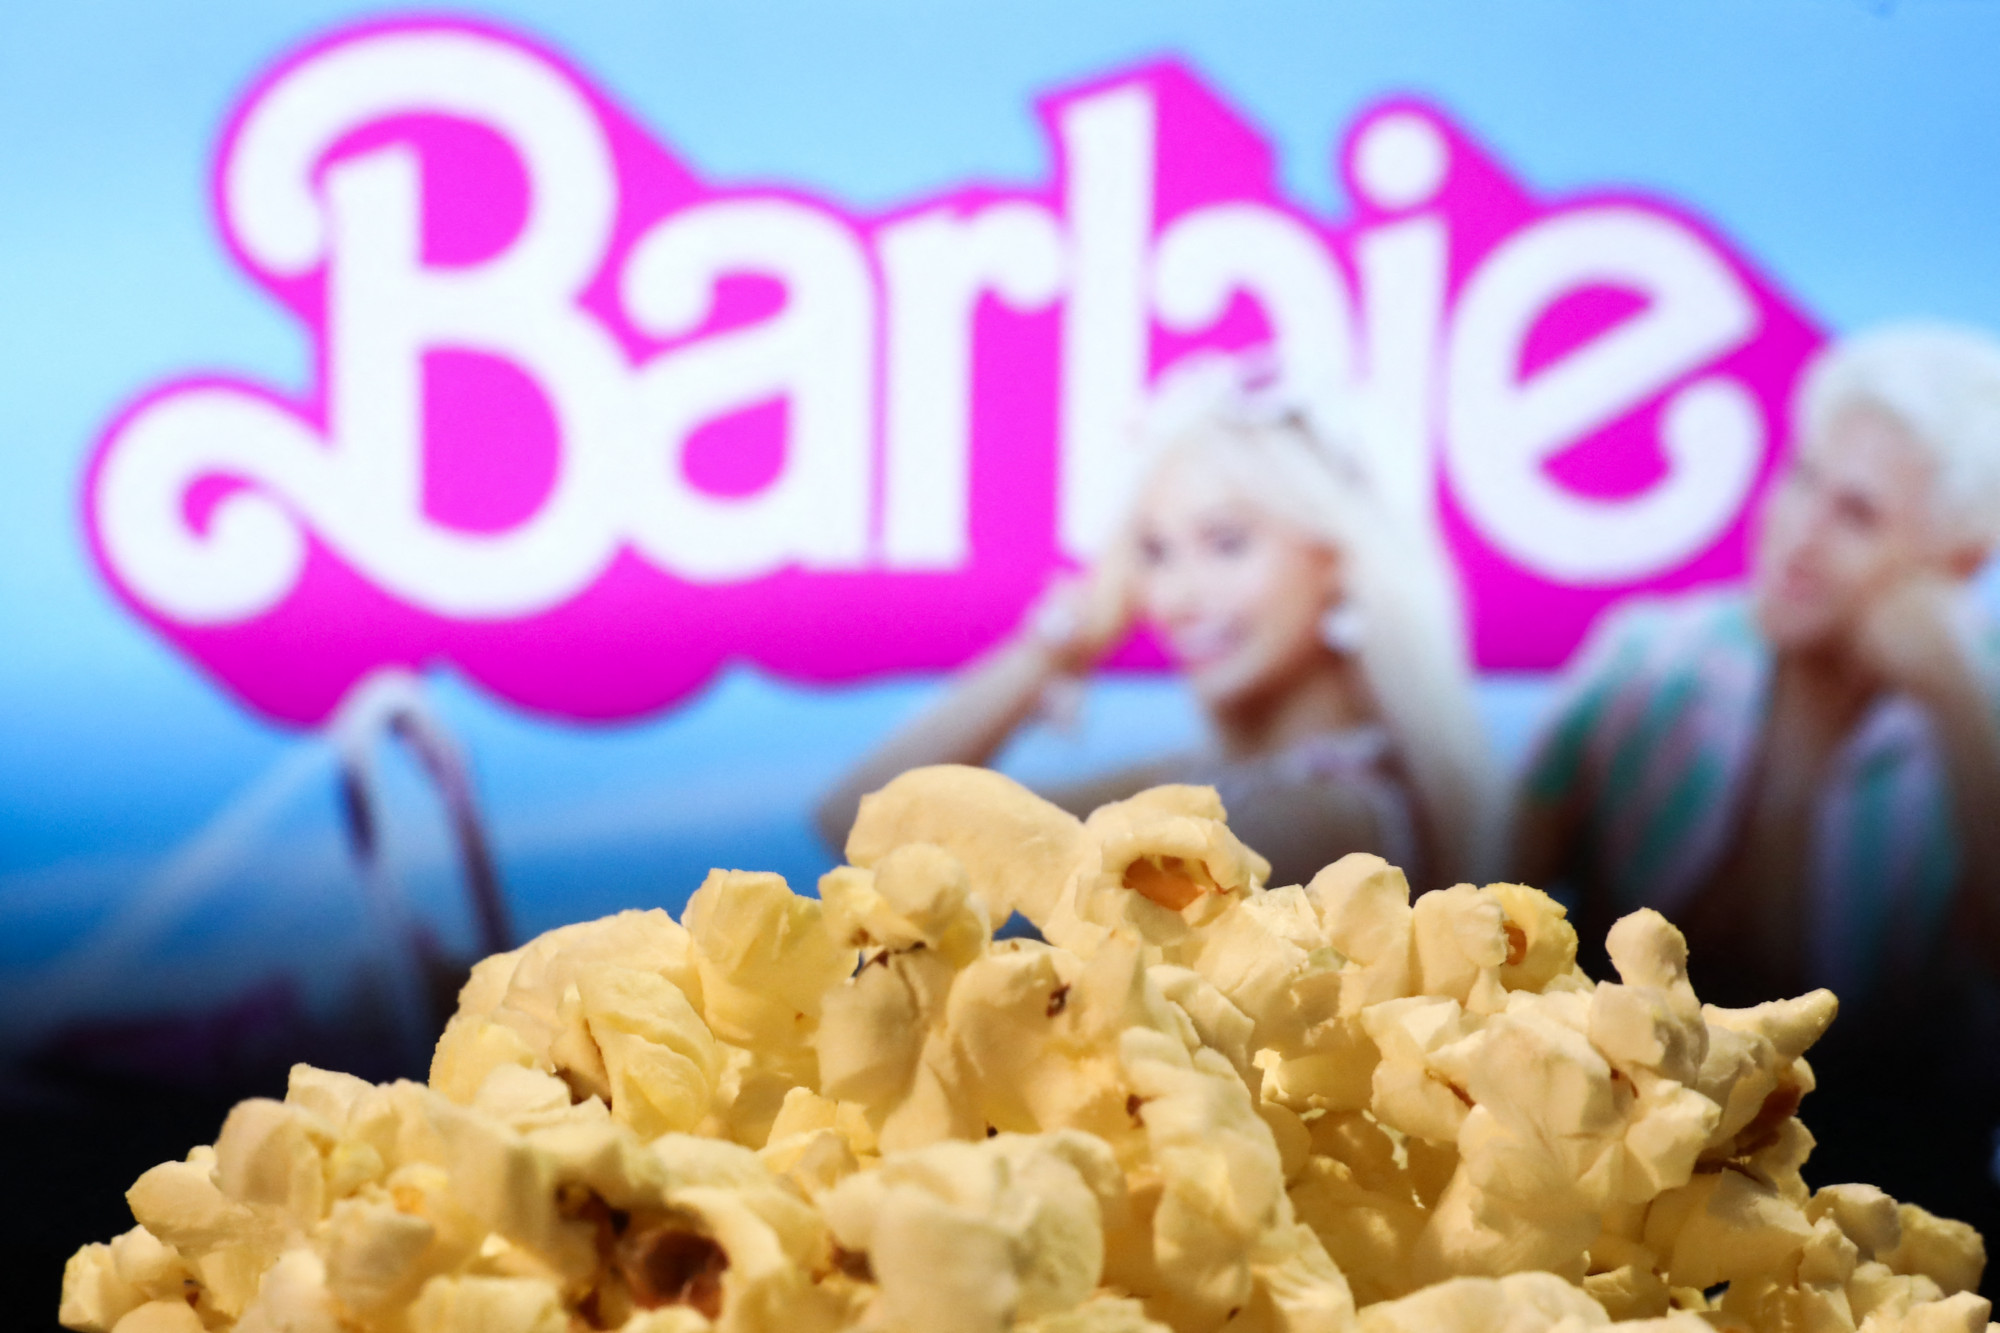 A homoszexualitás népszerűsítése miatt betiltották a Barbie-t Kuvaitban